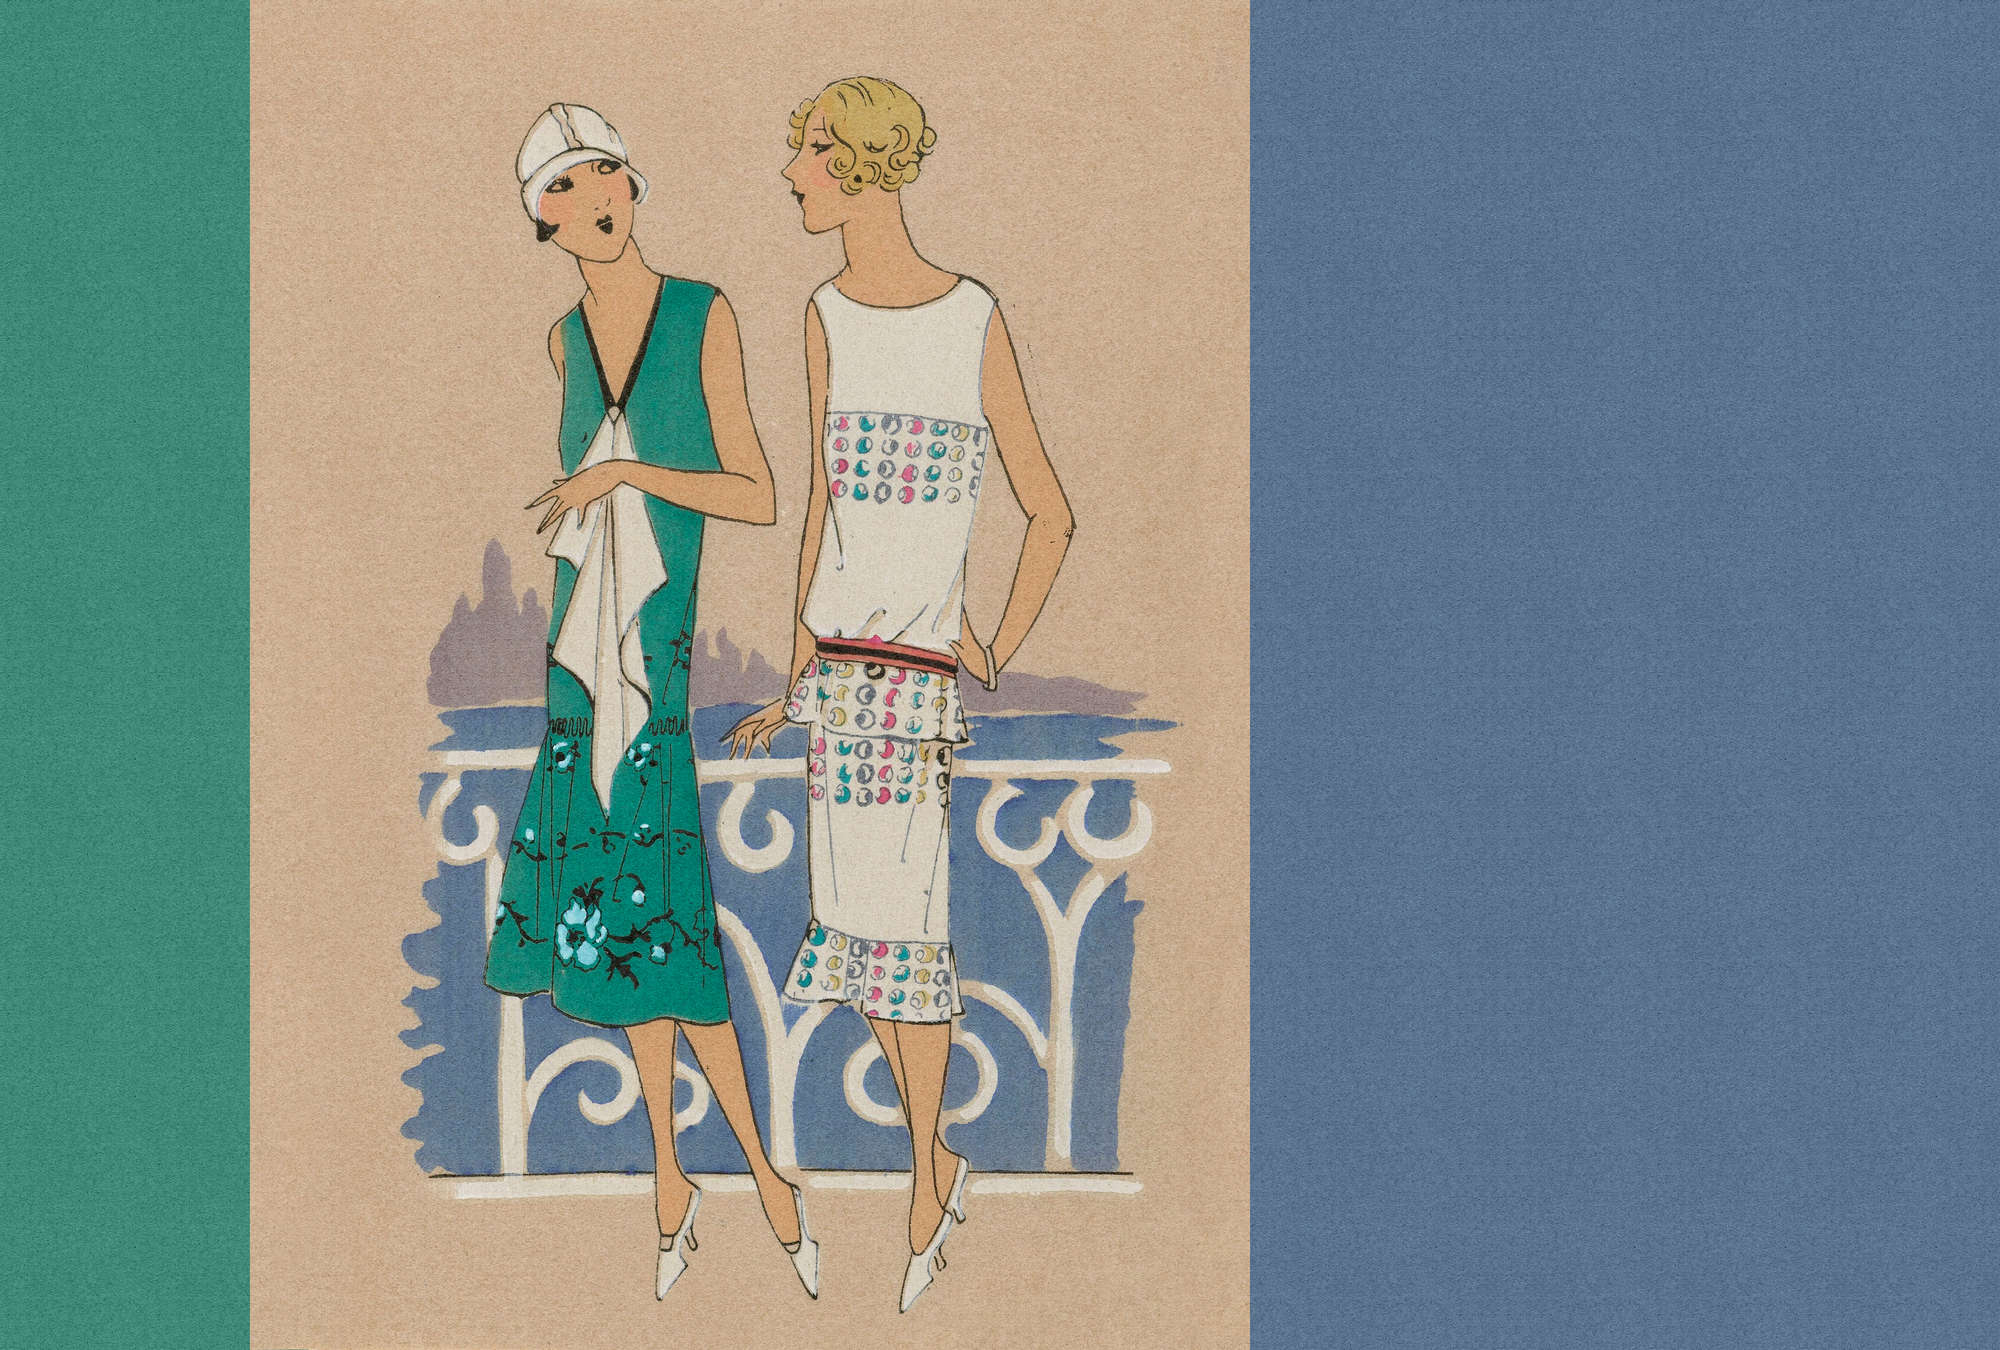             Parisienne 3 - Carta da parati retrò con stampa moda anni '20 in blu e verde
        